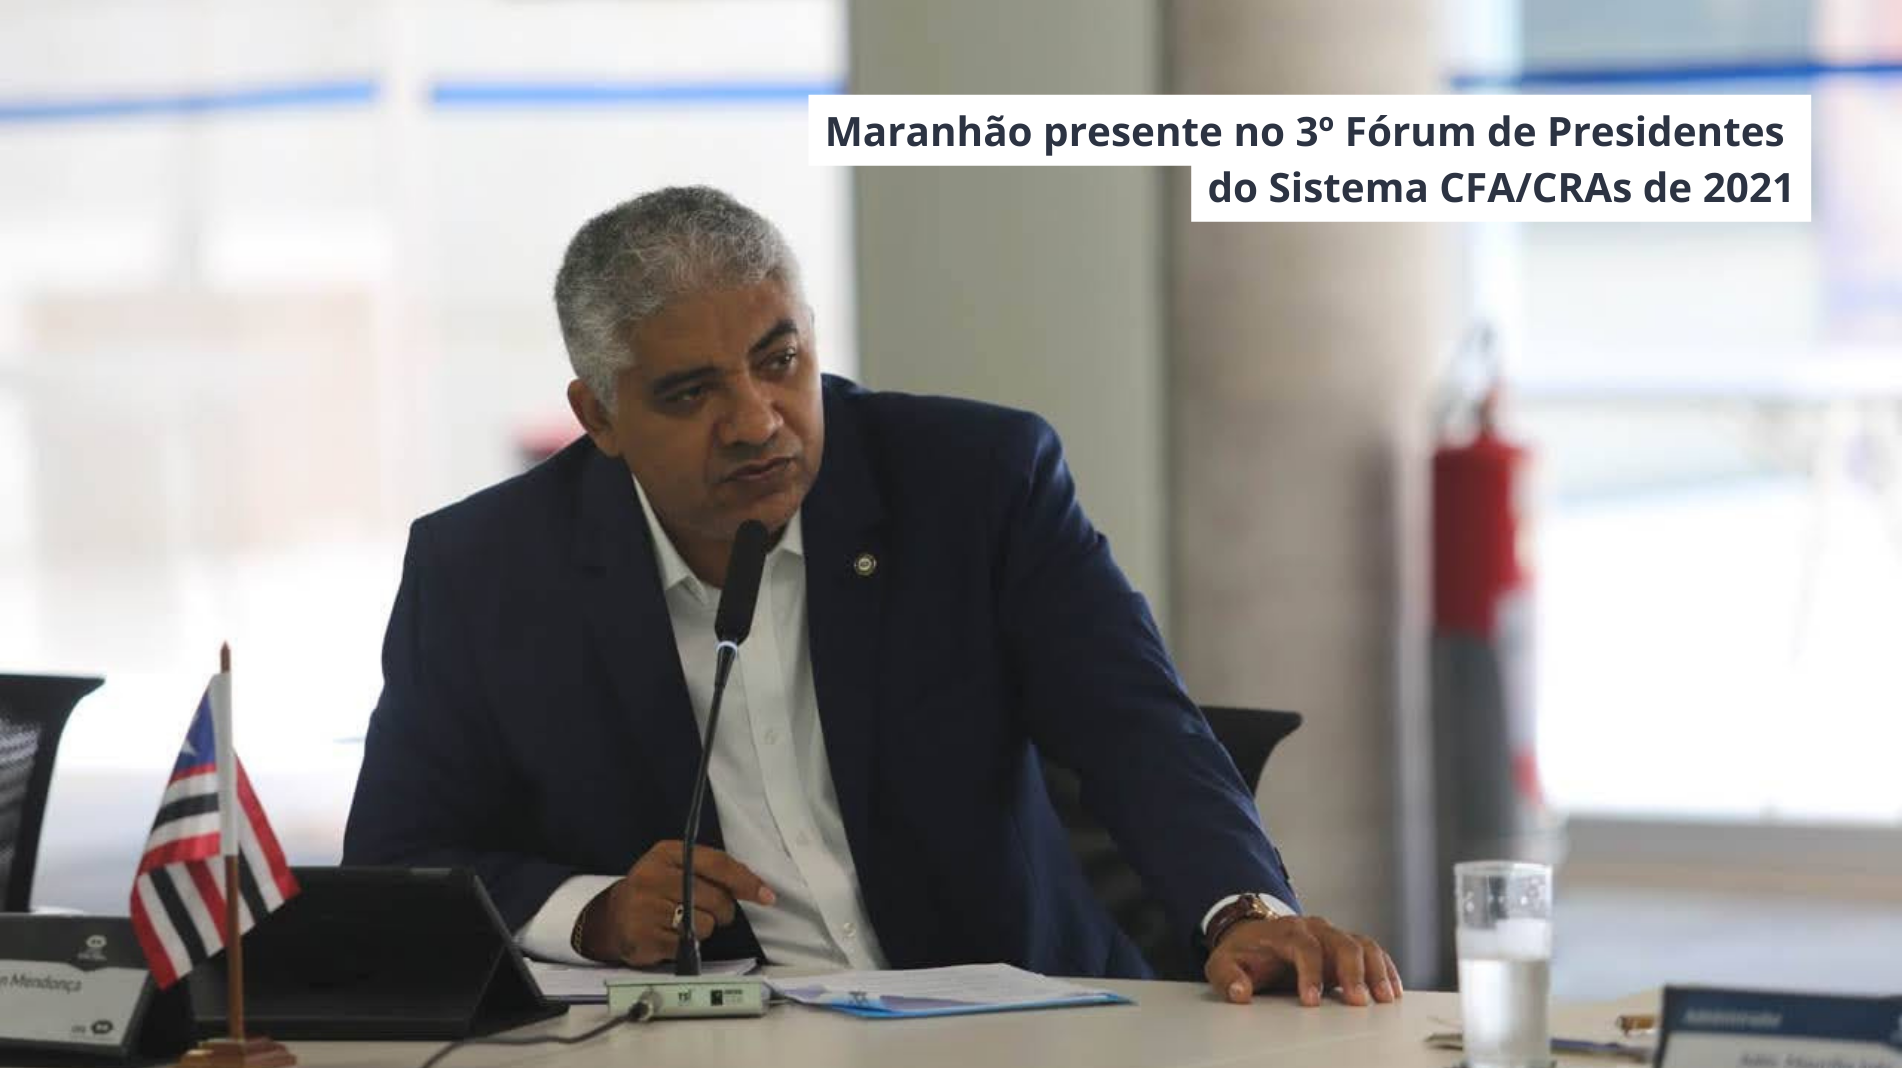 Maranhão presente no 3º Fórum de Presidentes do Sistema CFA/CRAs de 2021